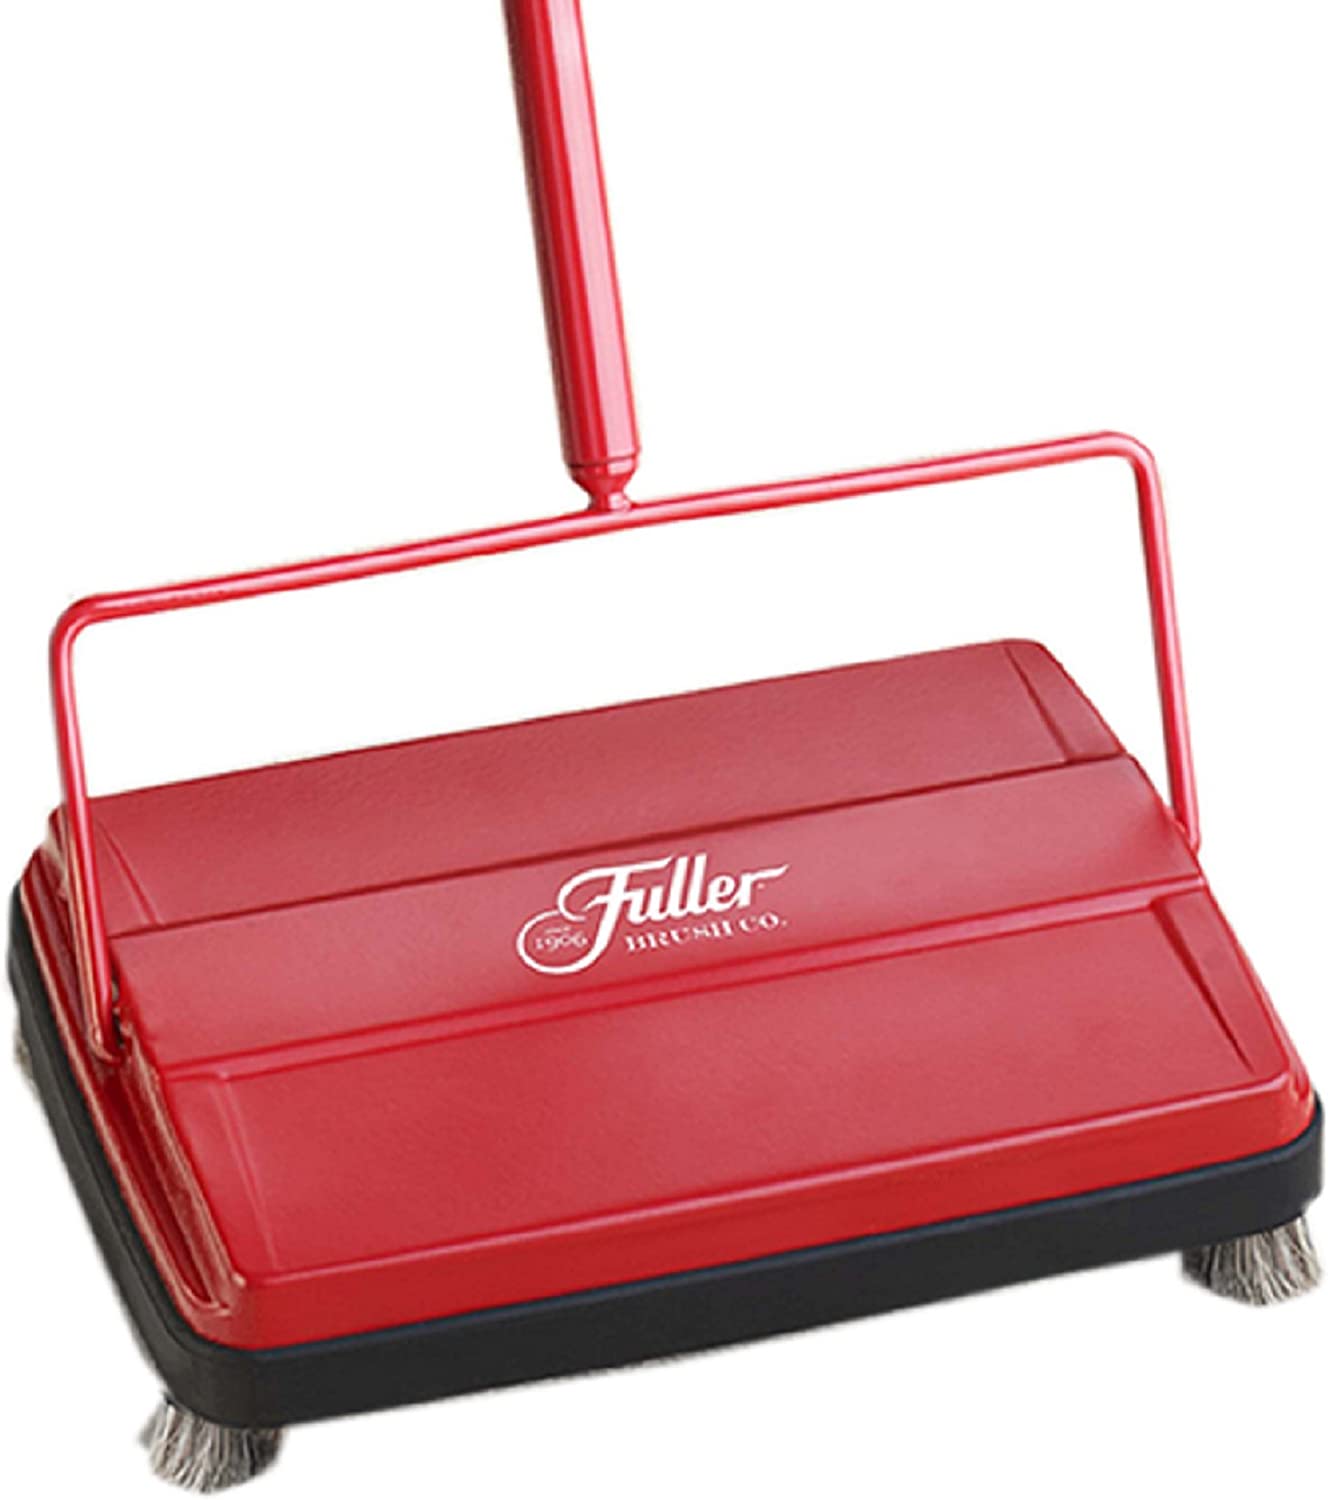 Fuller Brush 17052 Electrostatic Carpet & Floor [...]